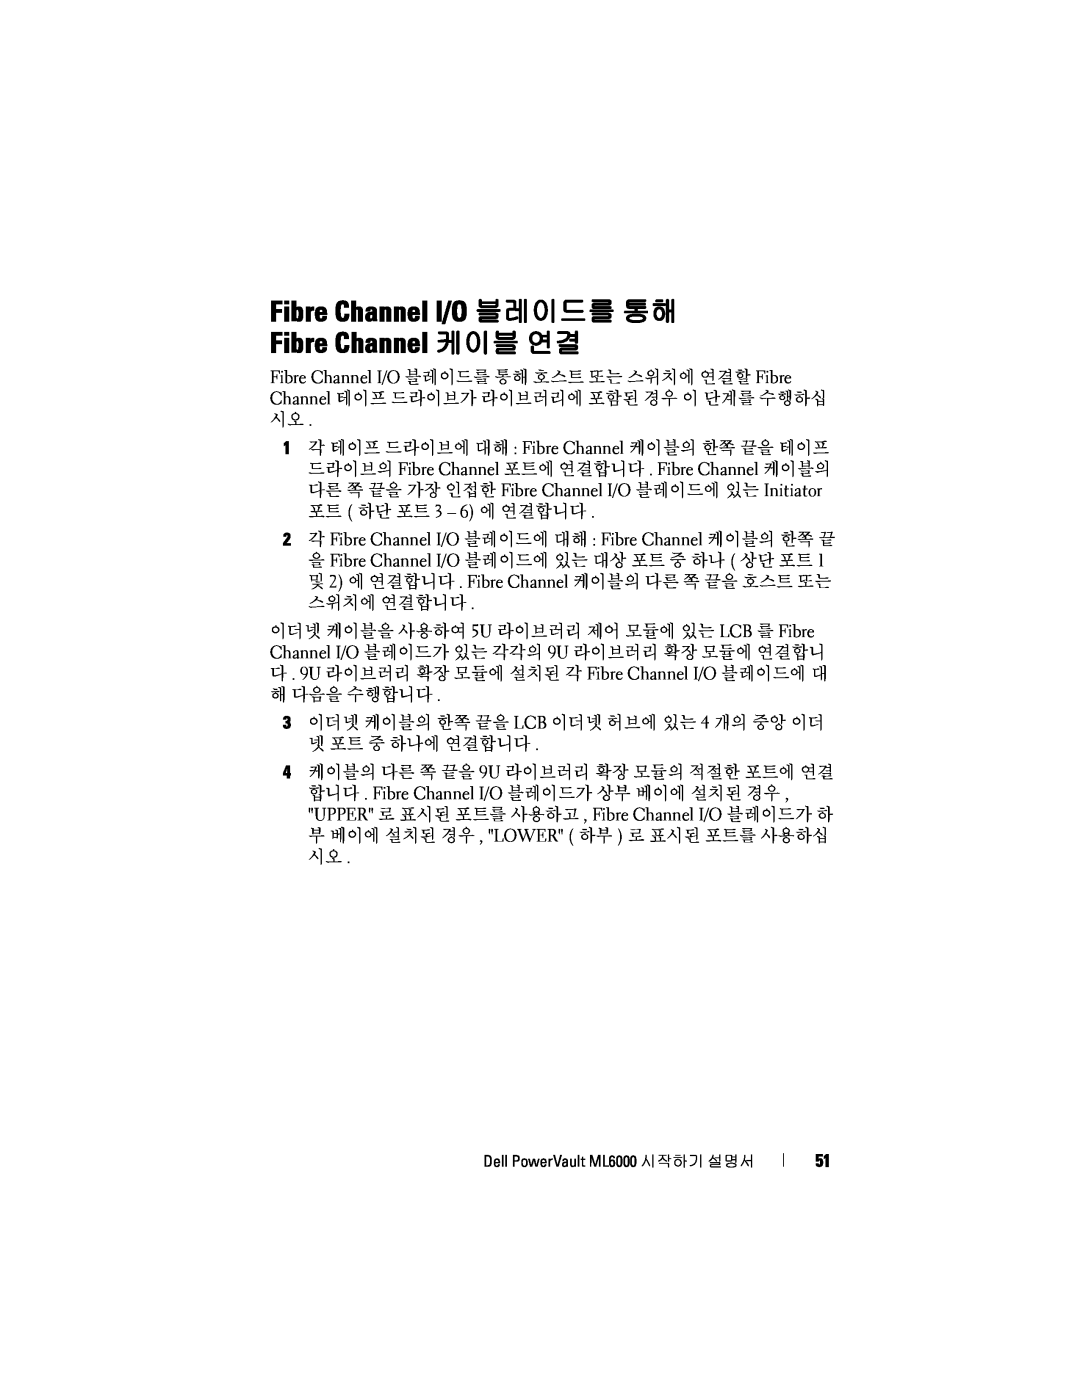 Dell ML6000 manual Fibre Channel I/O 블레이드를 통해 Fibre Channel 케이블 연결 